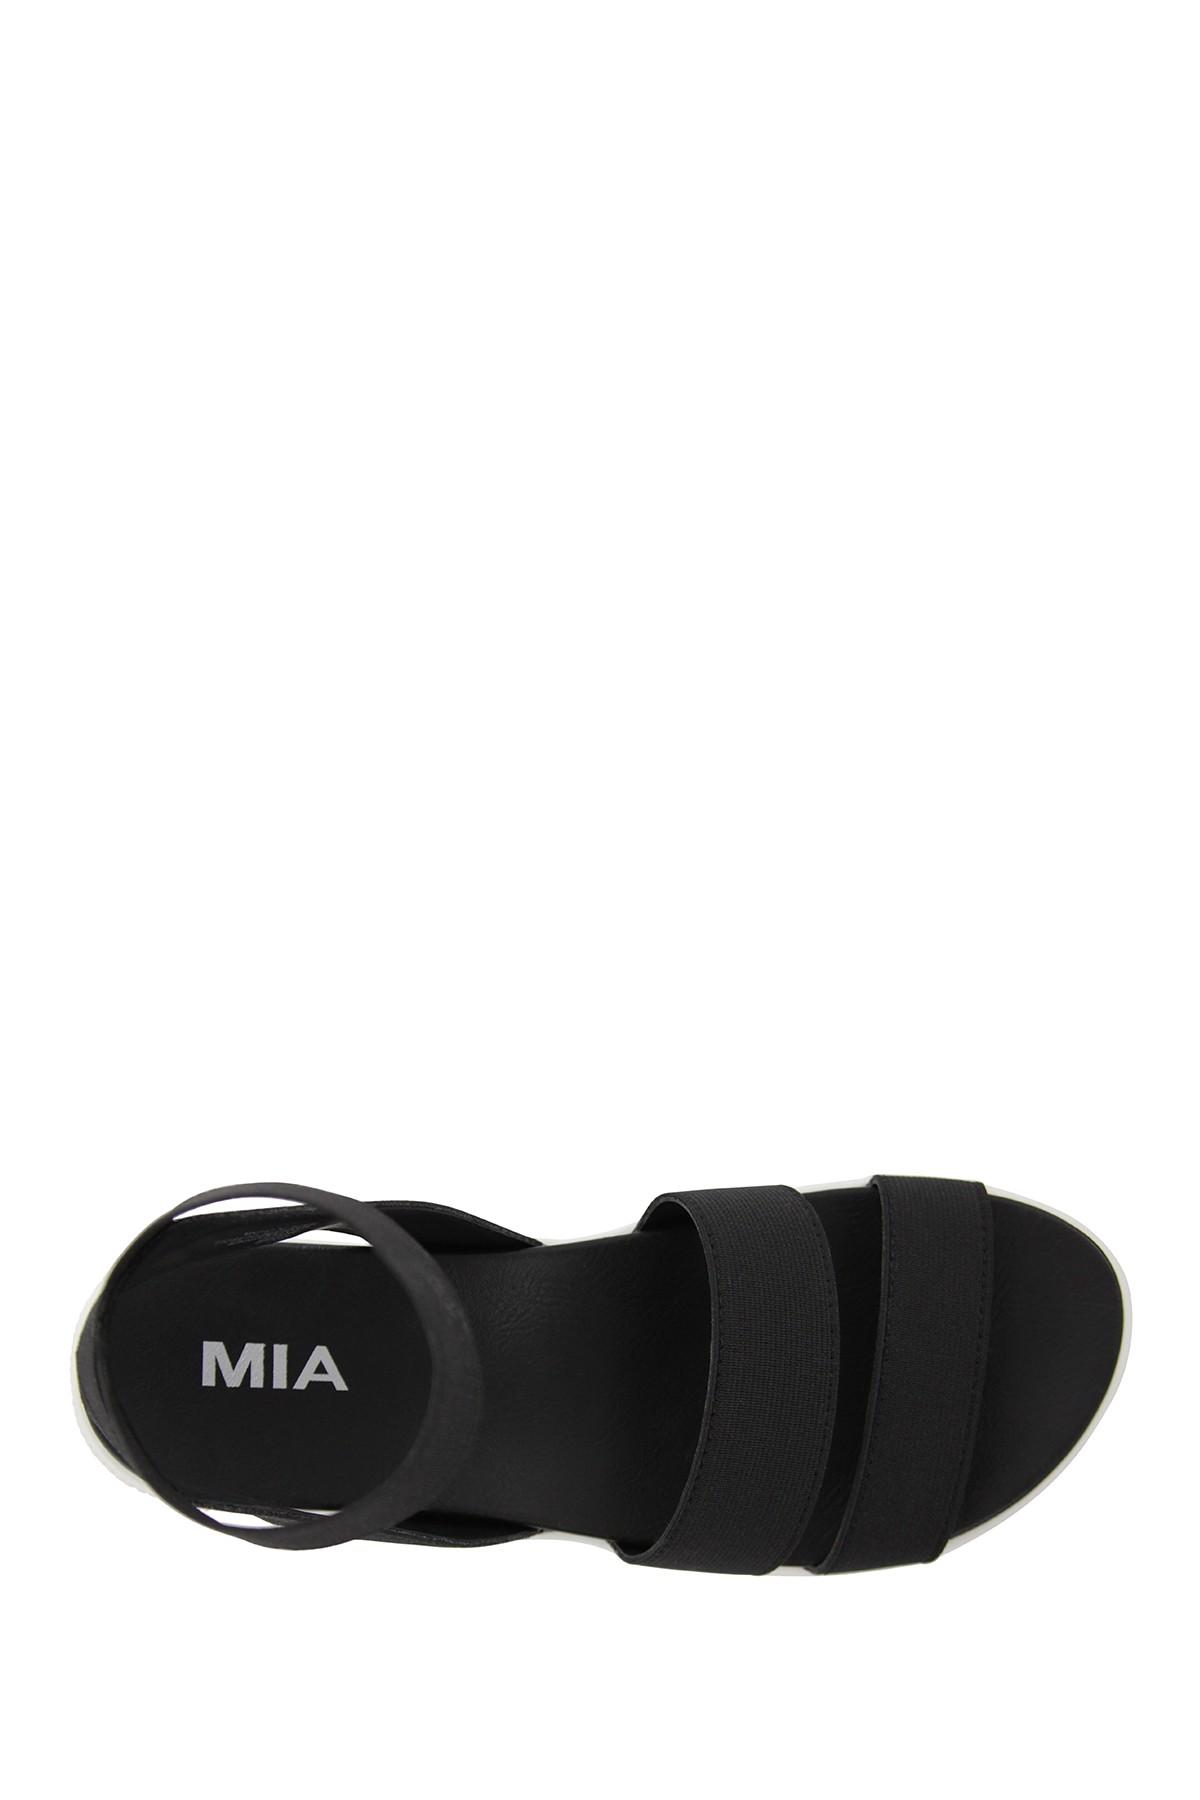 MIA Kassie Platform Sandal in Black - Lyst